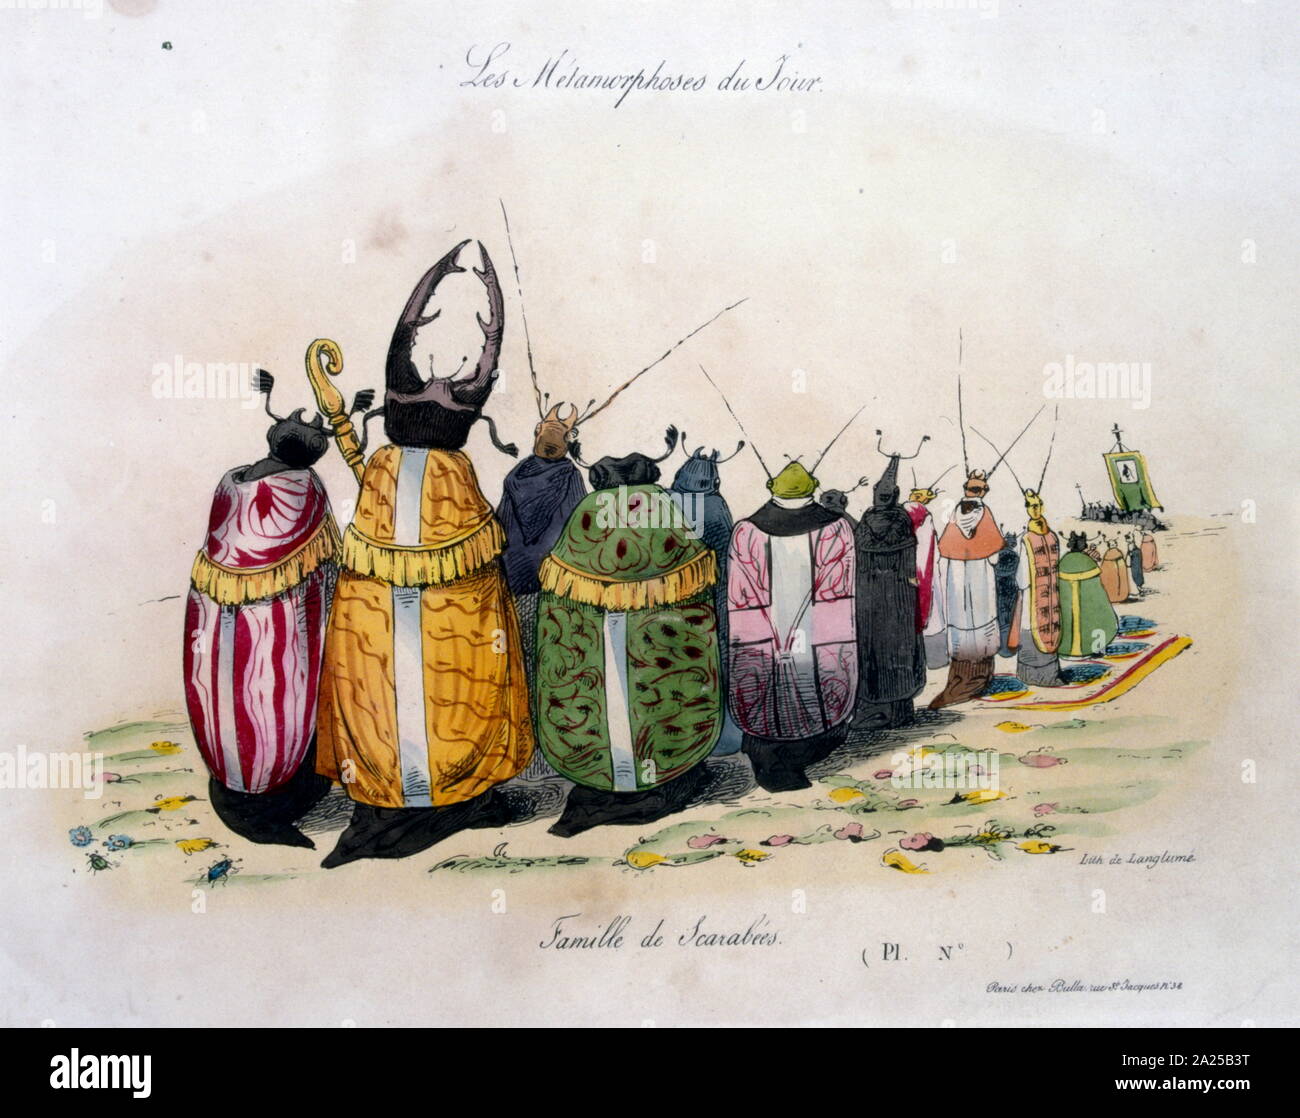 Jean-Ignace-Isidoro Gerard Grandville, 'Les Metamorphoses du jour" 1829.ilustración de una famosa serie de caricaturas políticas Foto de stock